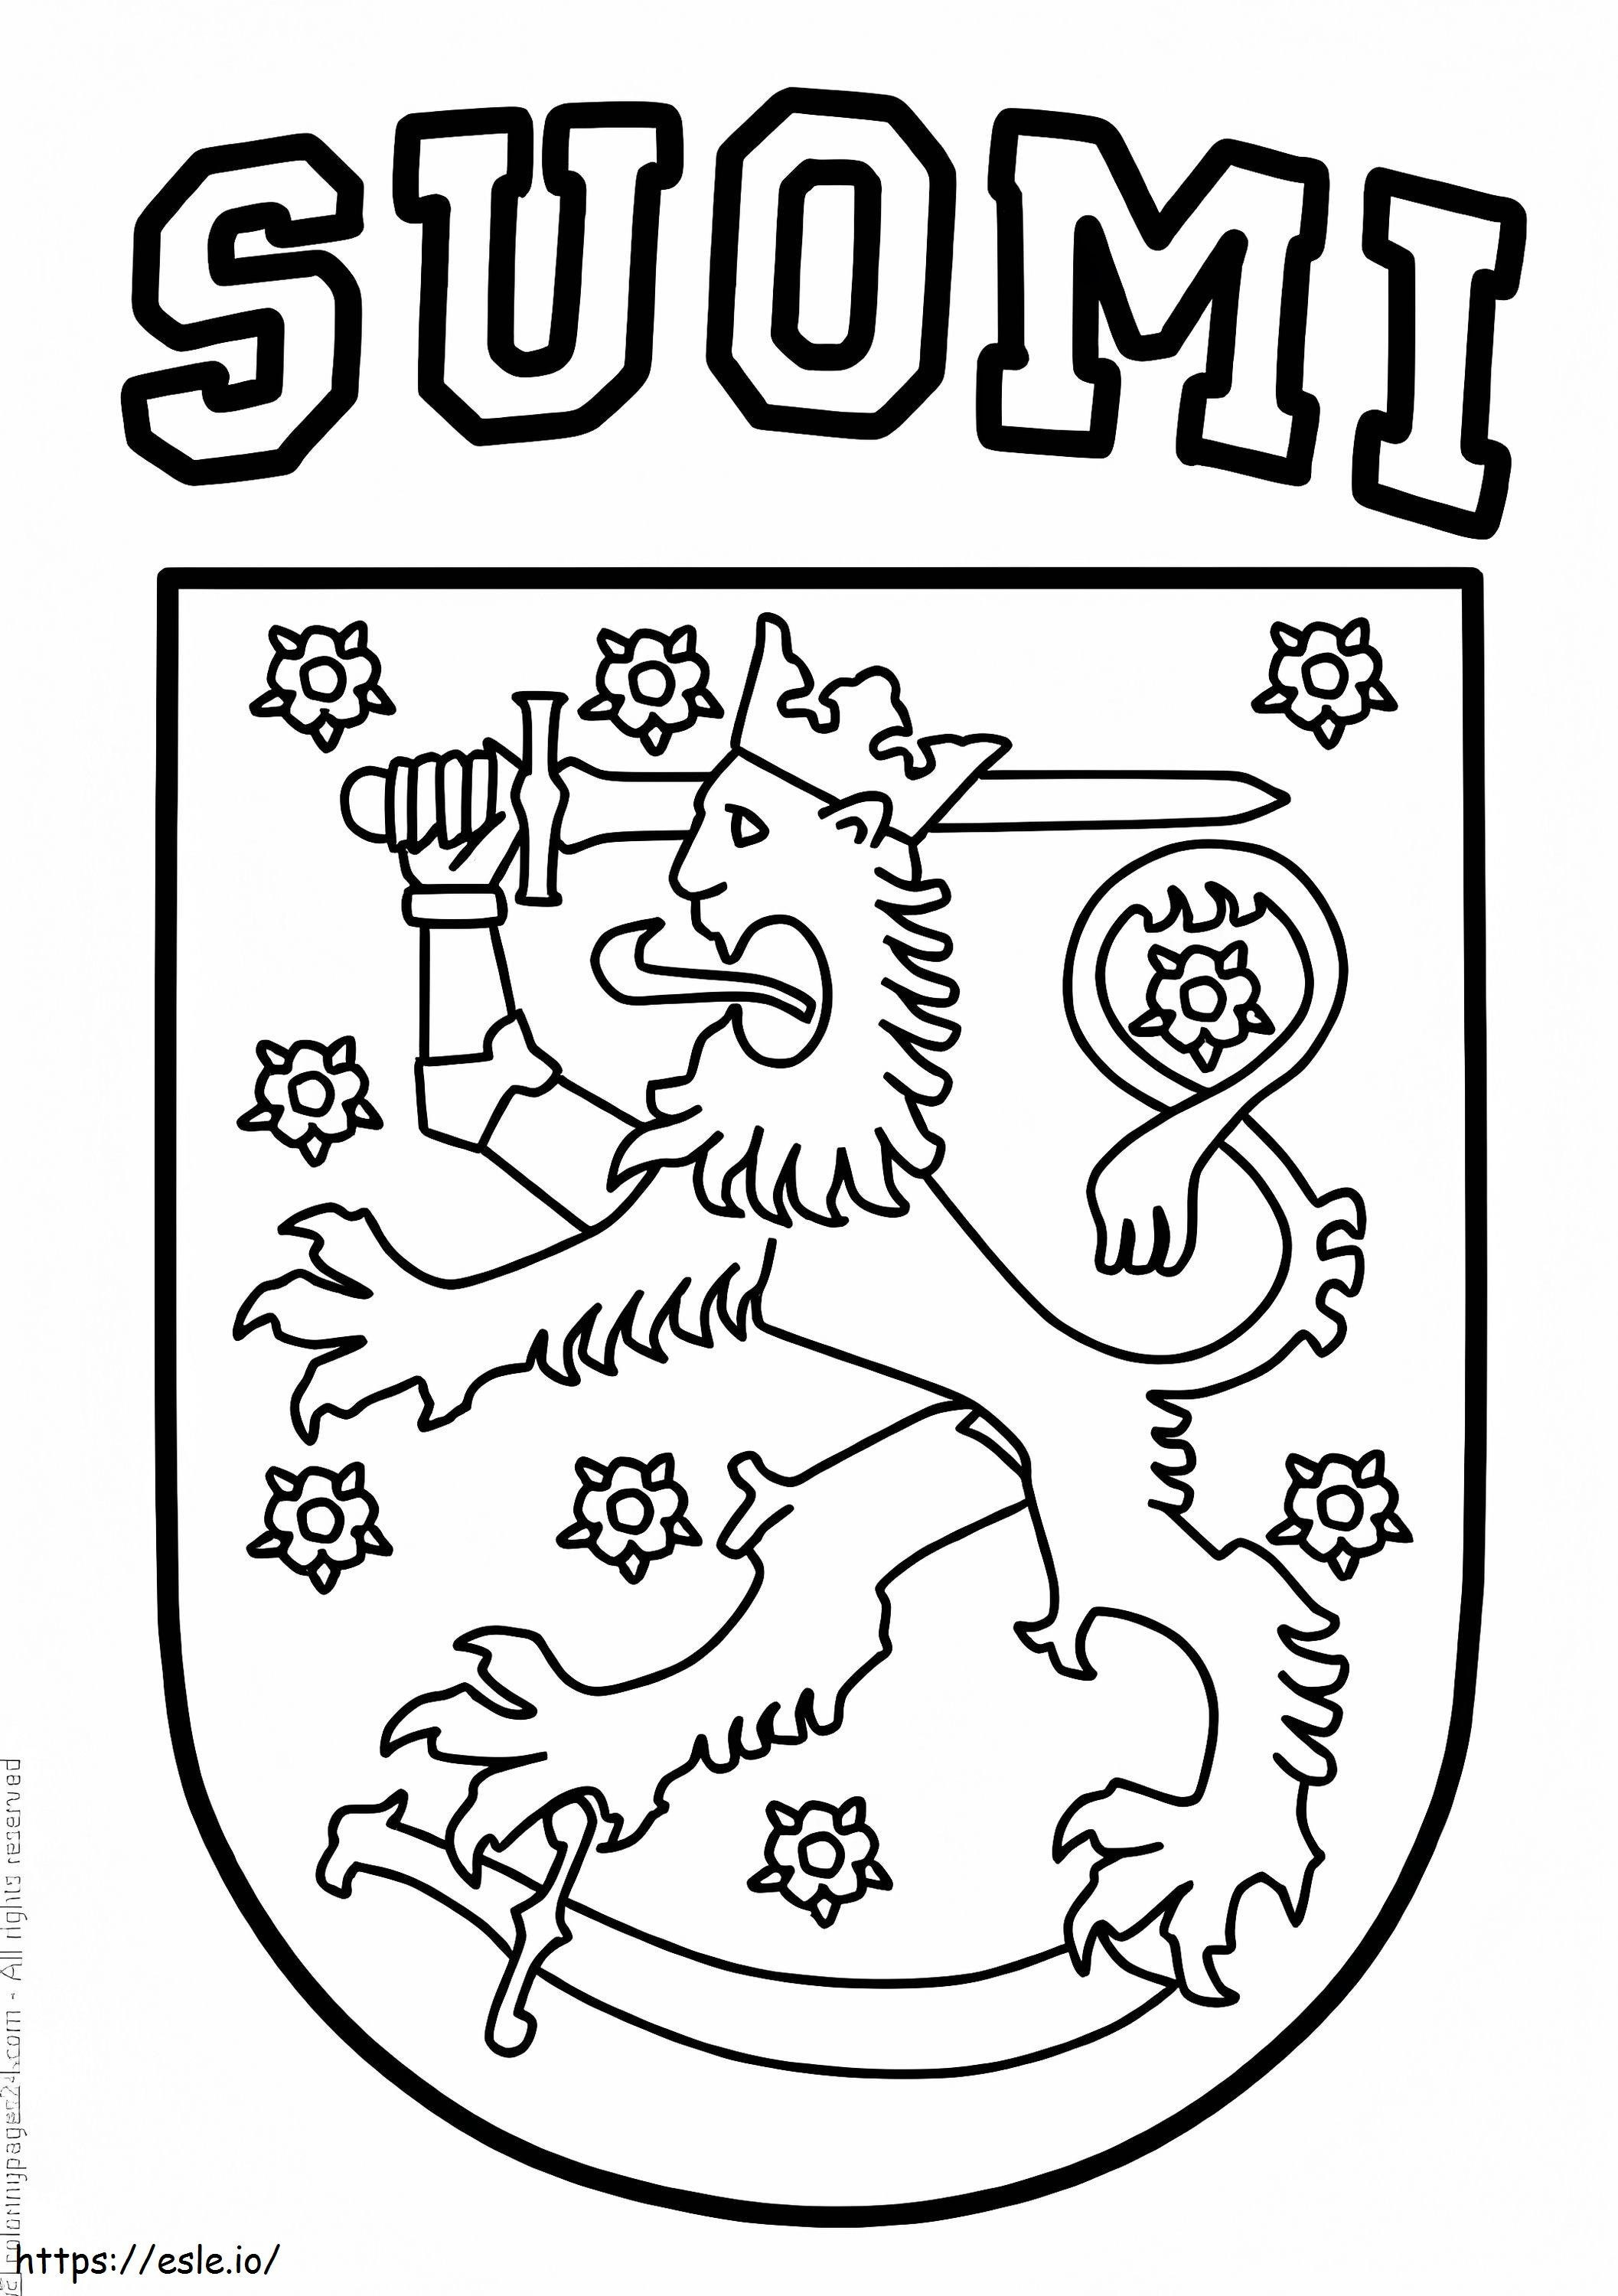 Wappen von Finnland ausmalbilder